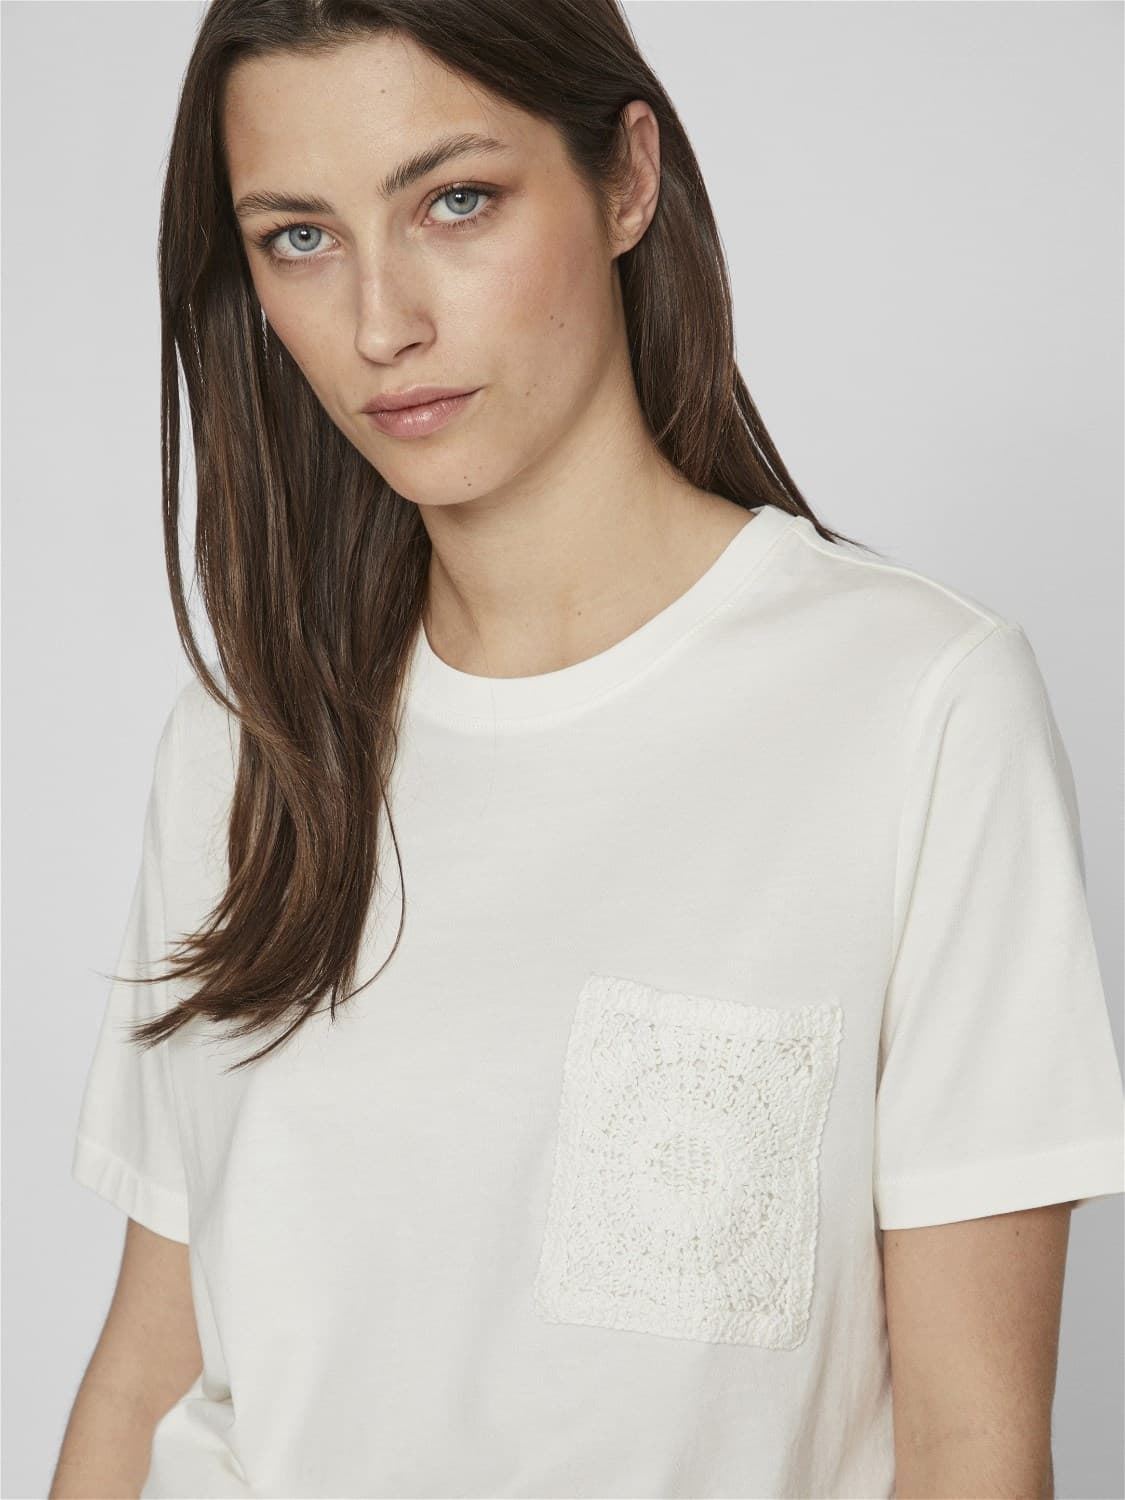 Camiseta crochet visybil egret - Imagen 3